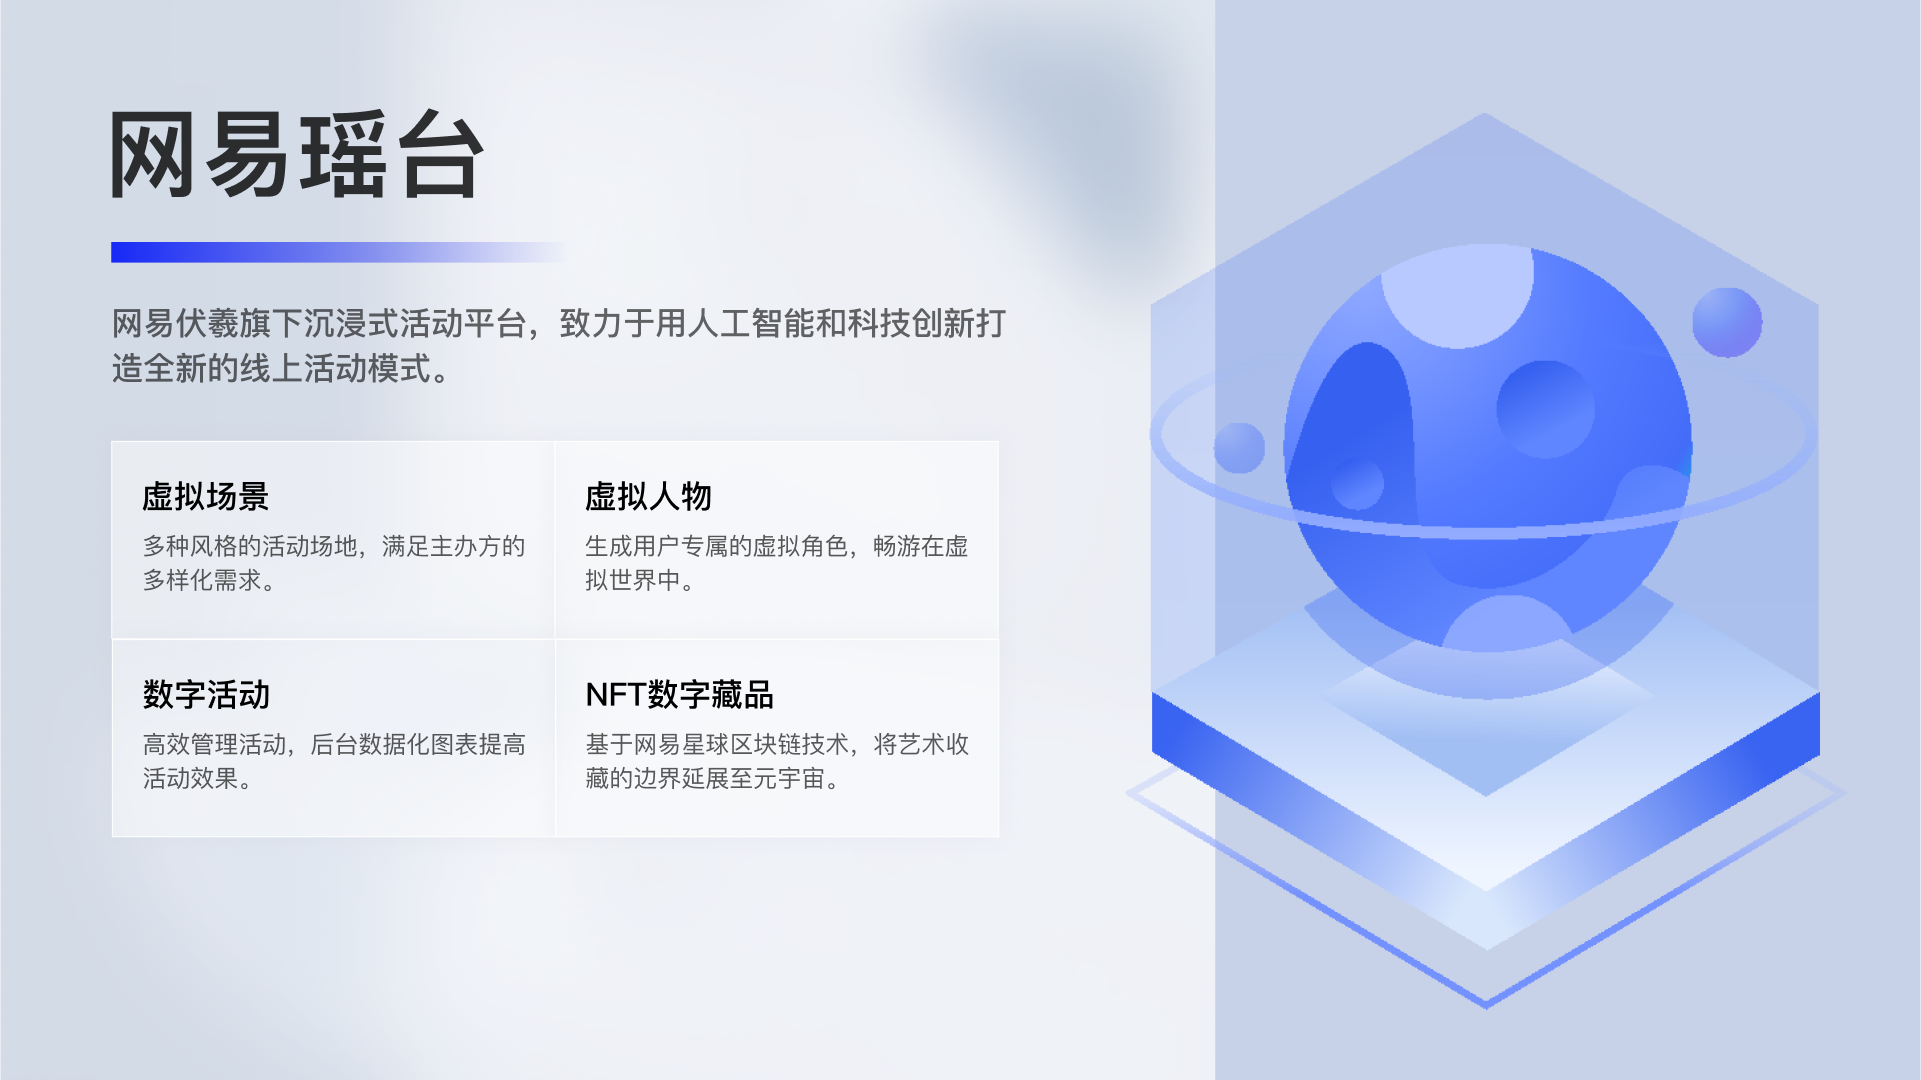 图片展示了一个蓝色调的图标，类似于原子结构模型，旁边有一些中文文字说明，整体设计简洁，色彩协调，给人科技感。